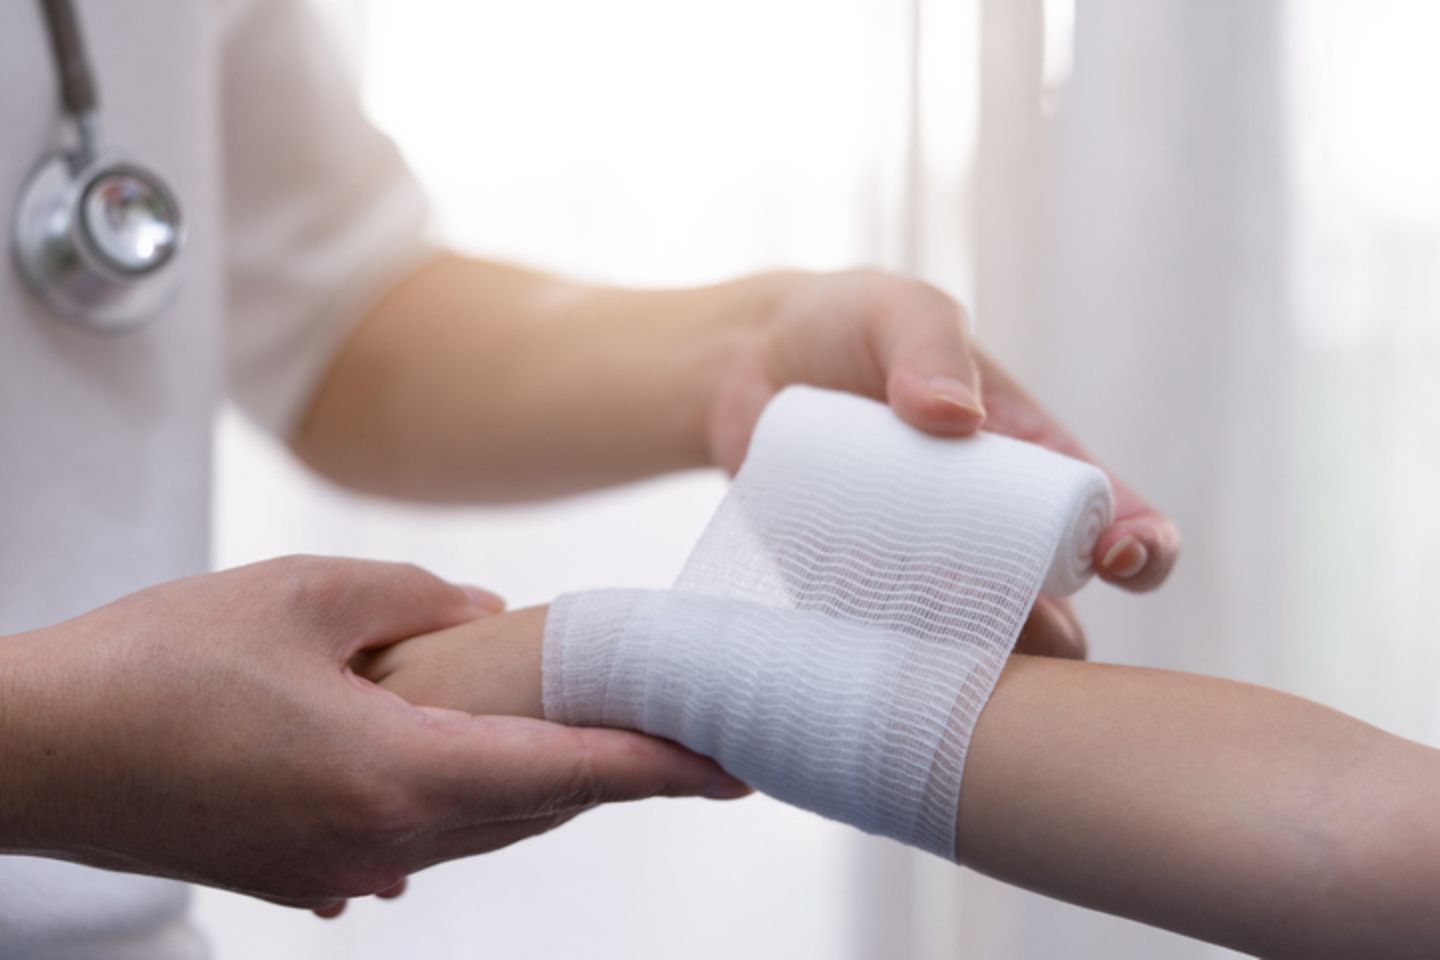 A nurse winds a gauze bandage around an arm